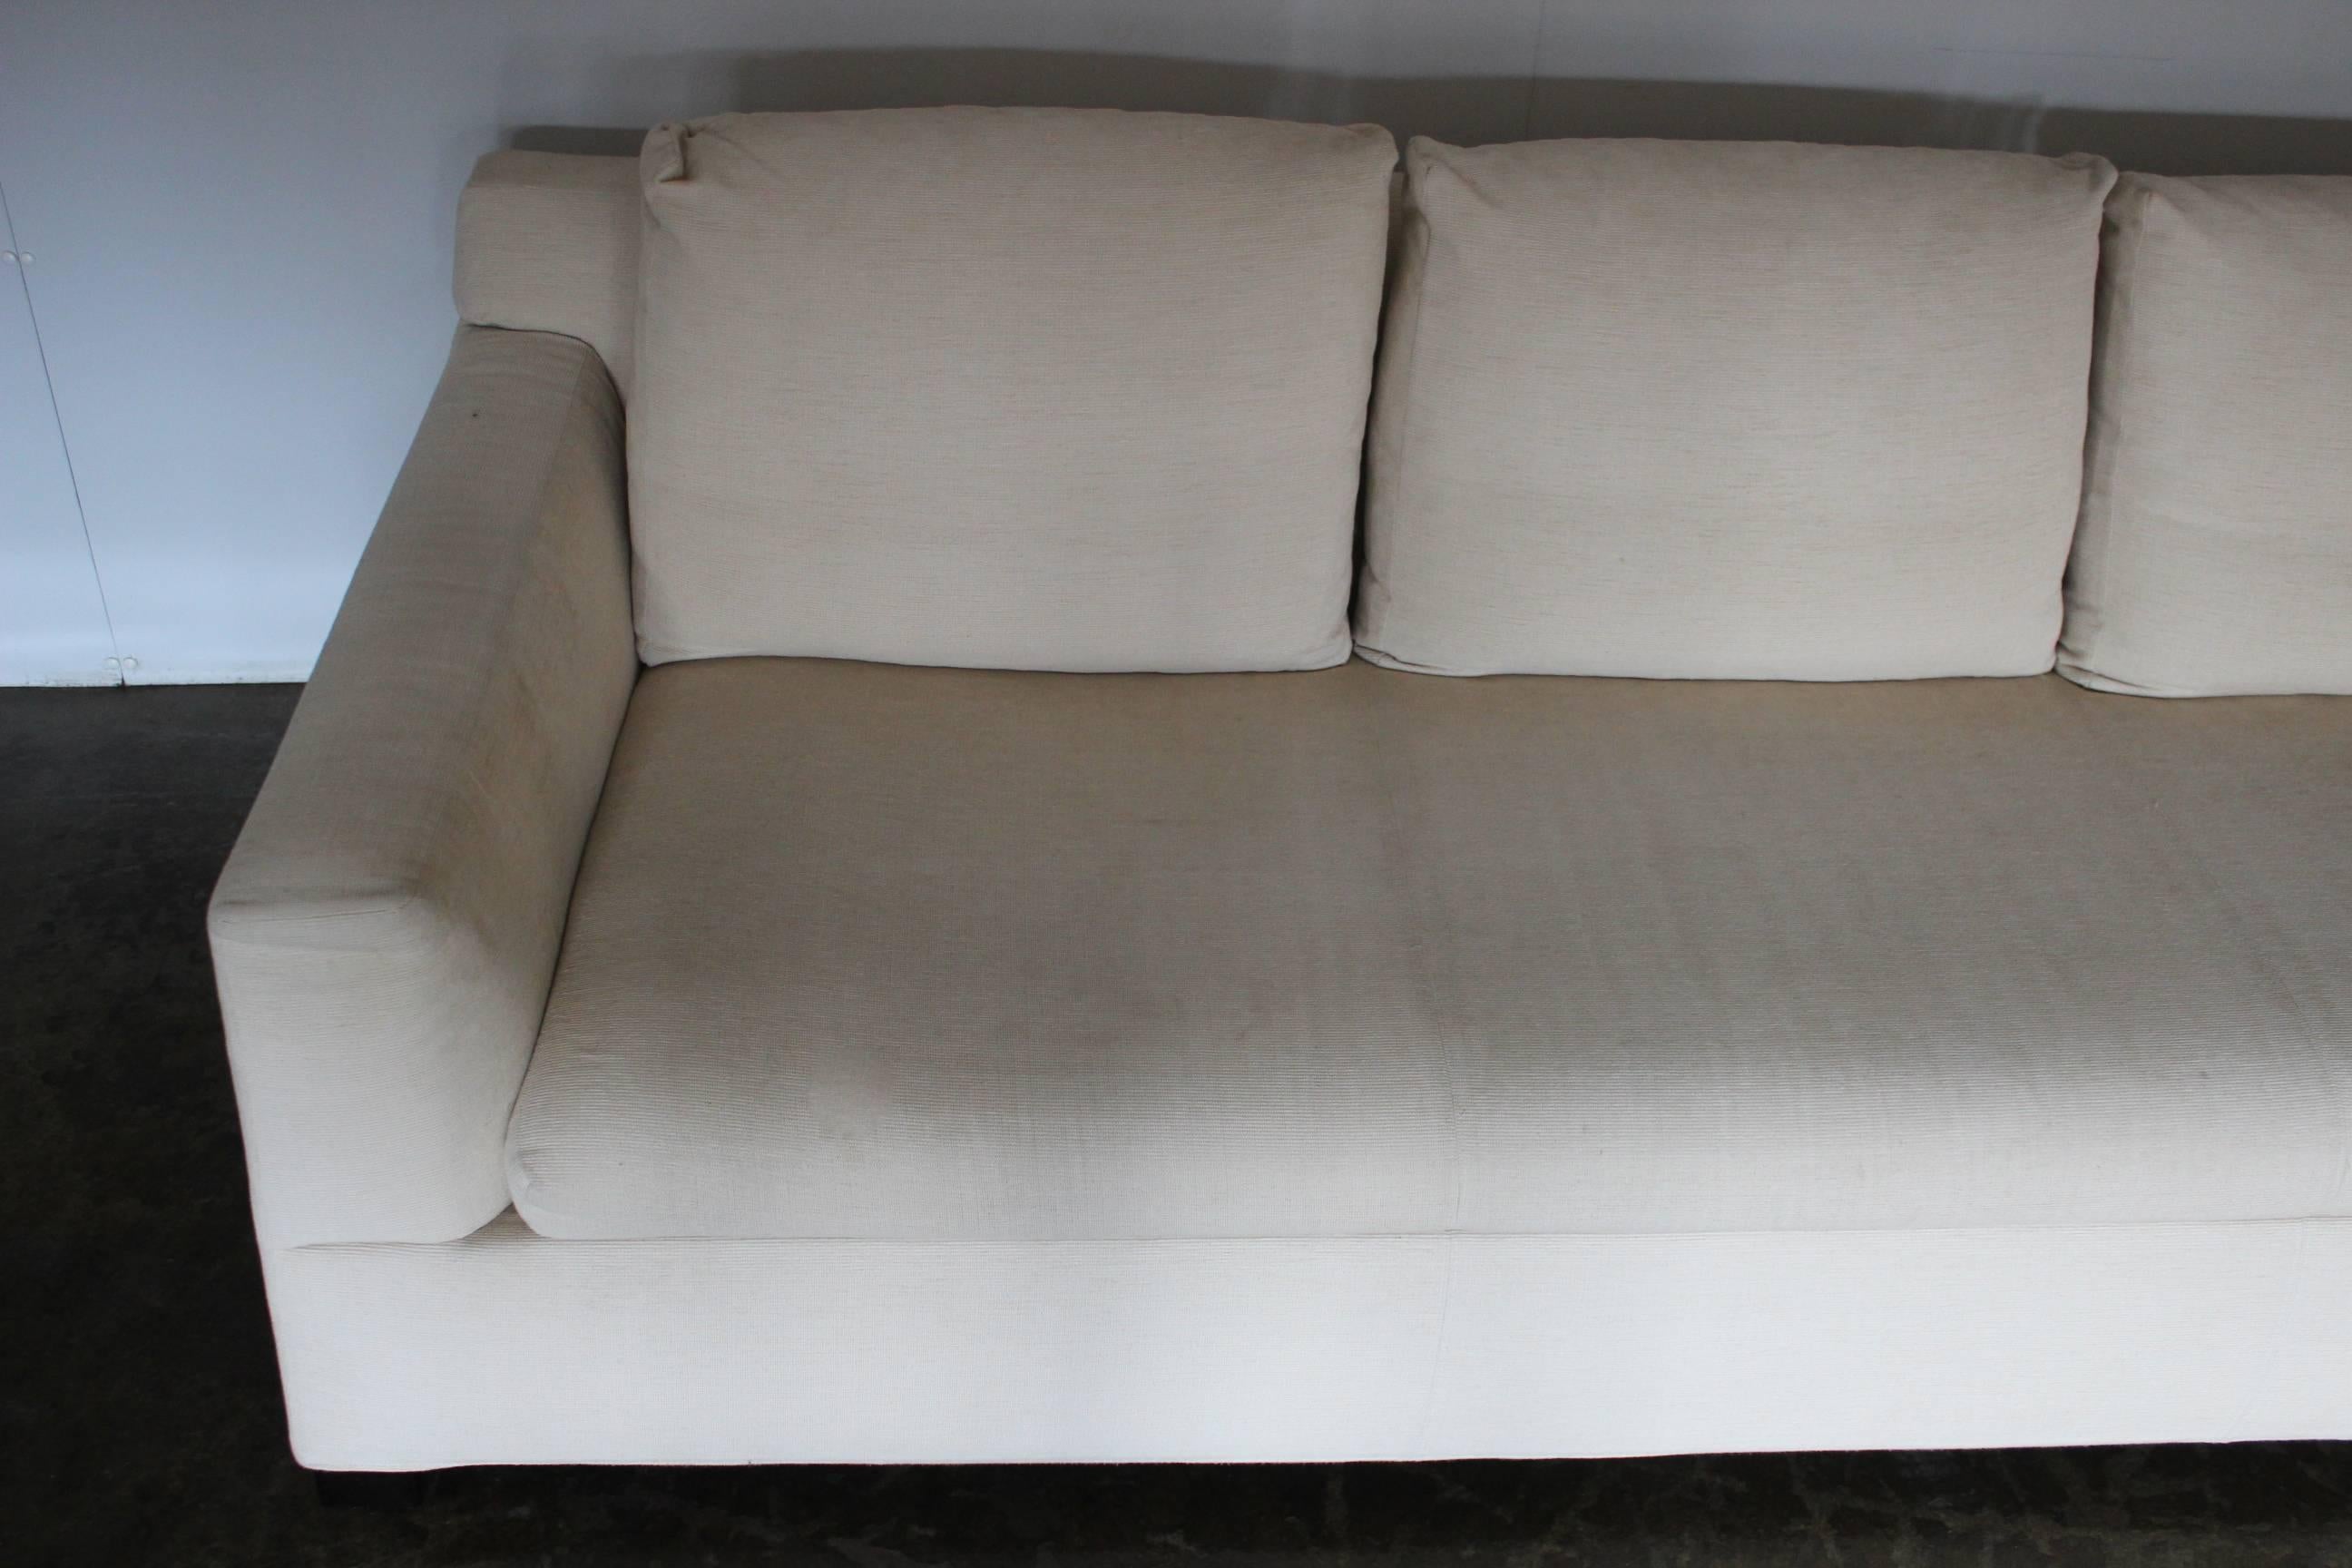 Contemporary Minotti “Gilbert” Three-Seat Sofa in Neutral Cream “Corda” Fabric